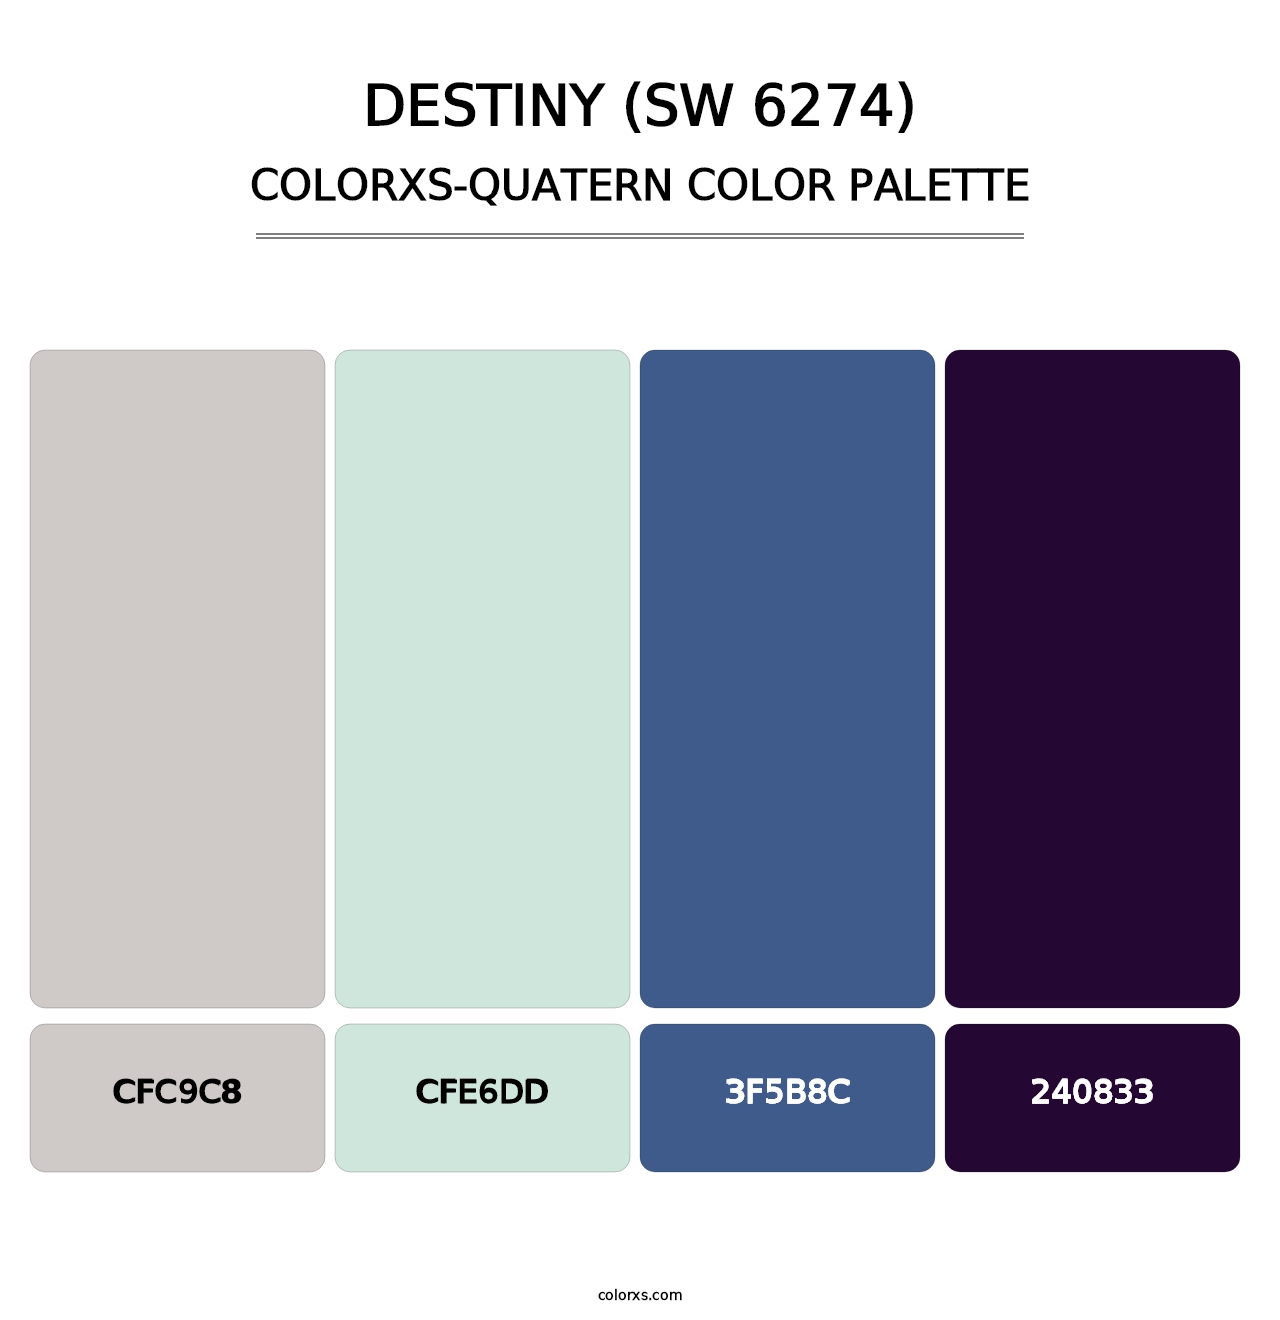 Destiny (SW 6274) - Colorxs Quatern Palette